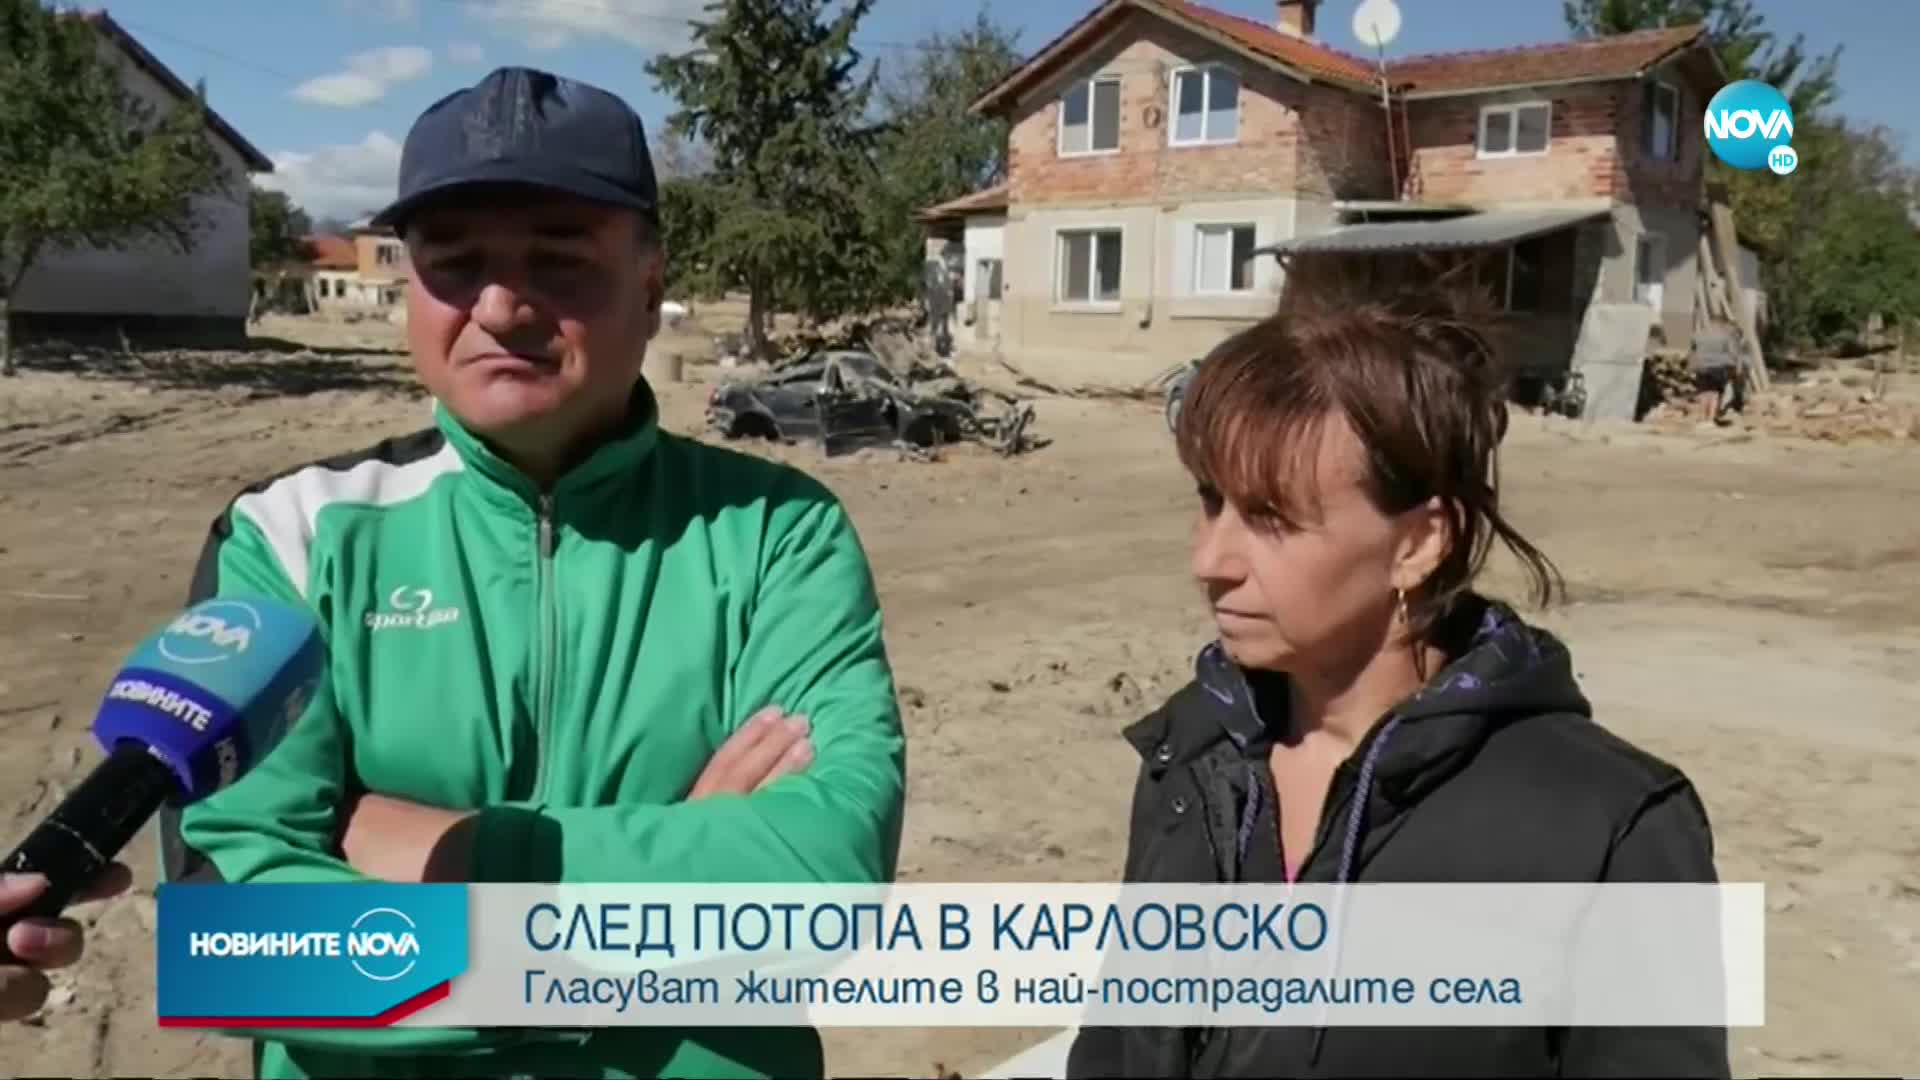 СЛЕД ПОТОПА В КАРЛОВСКО: Има ли интерес към вота в най-пострадалите села